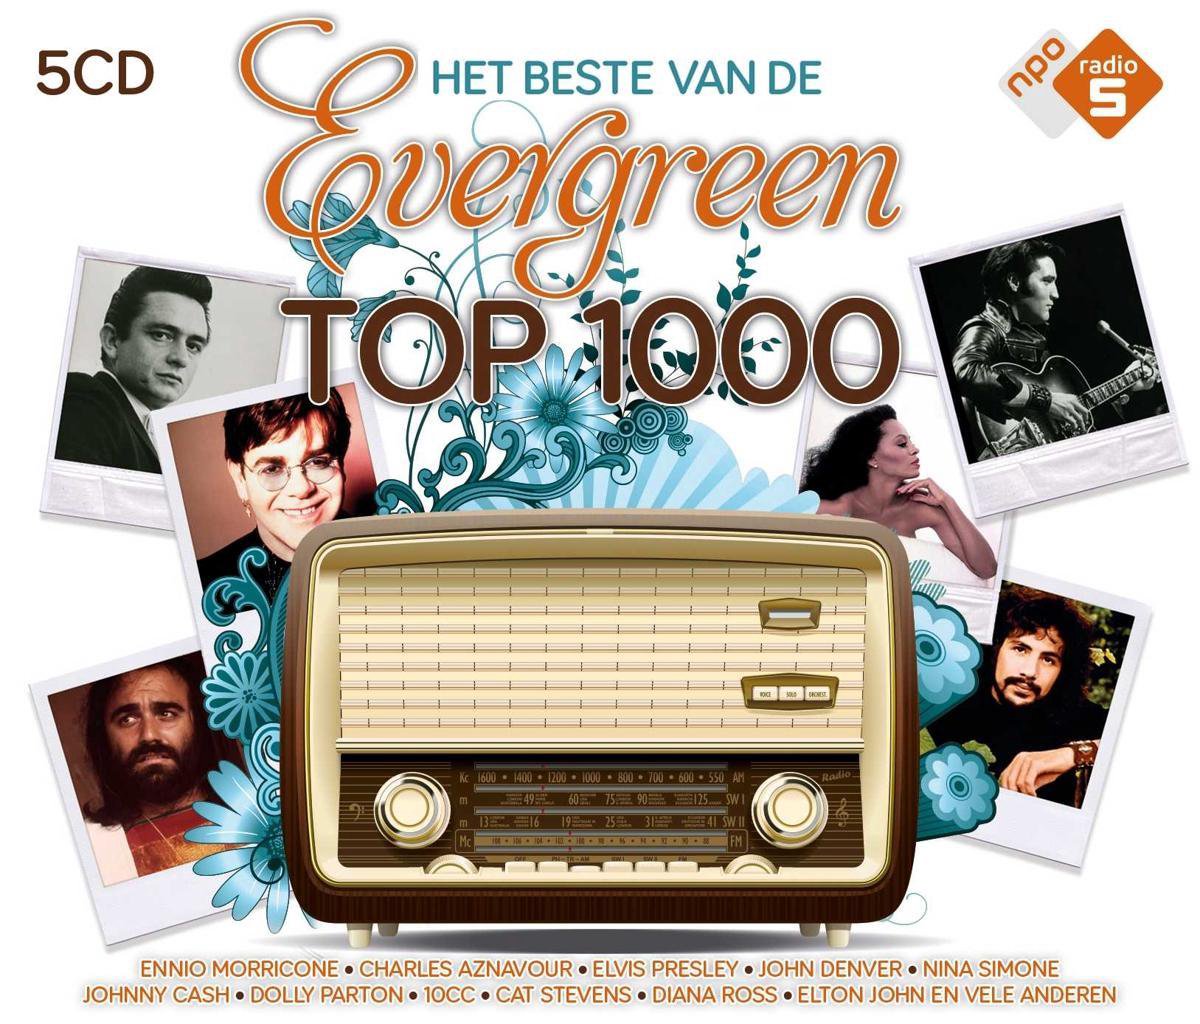 Het Beste Van De Evergreen Top 1000 (5CD)